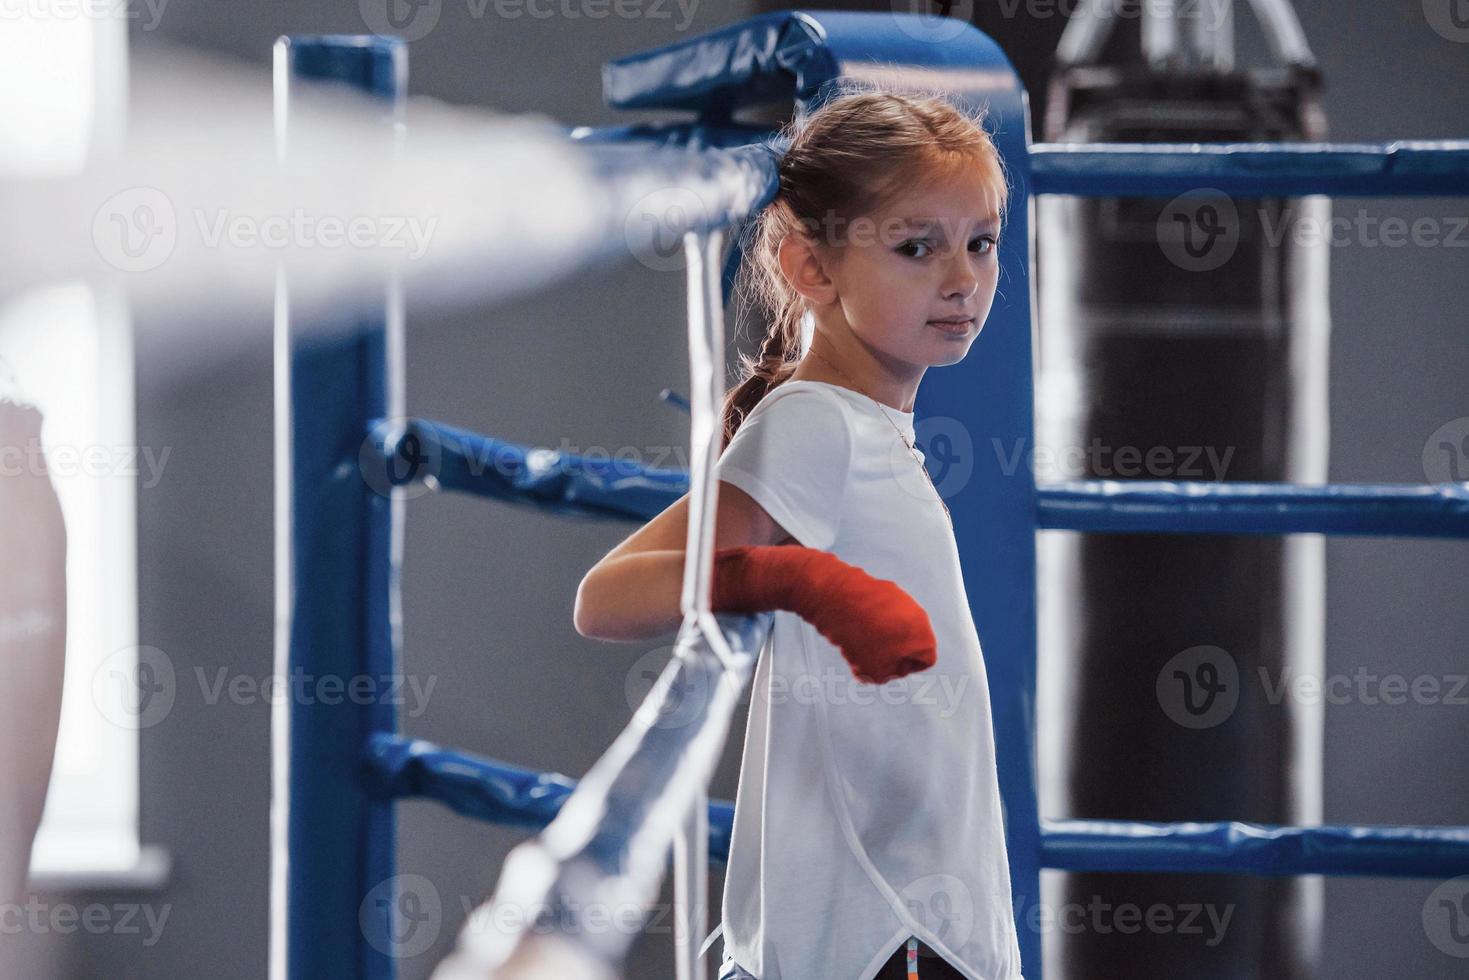 en el ring de boxeo. una niña pequeña con ropa deportiva está en el gimnasio y tiene un día de ejercicio foto